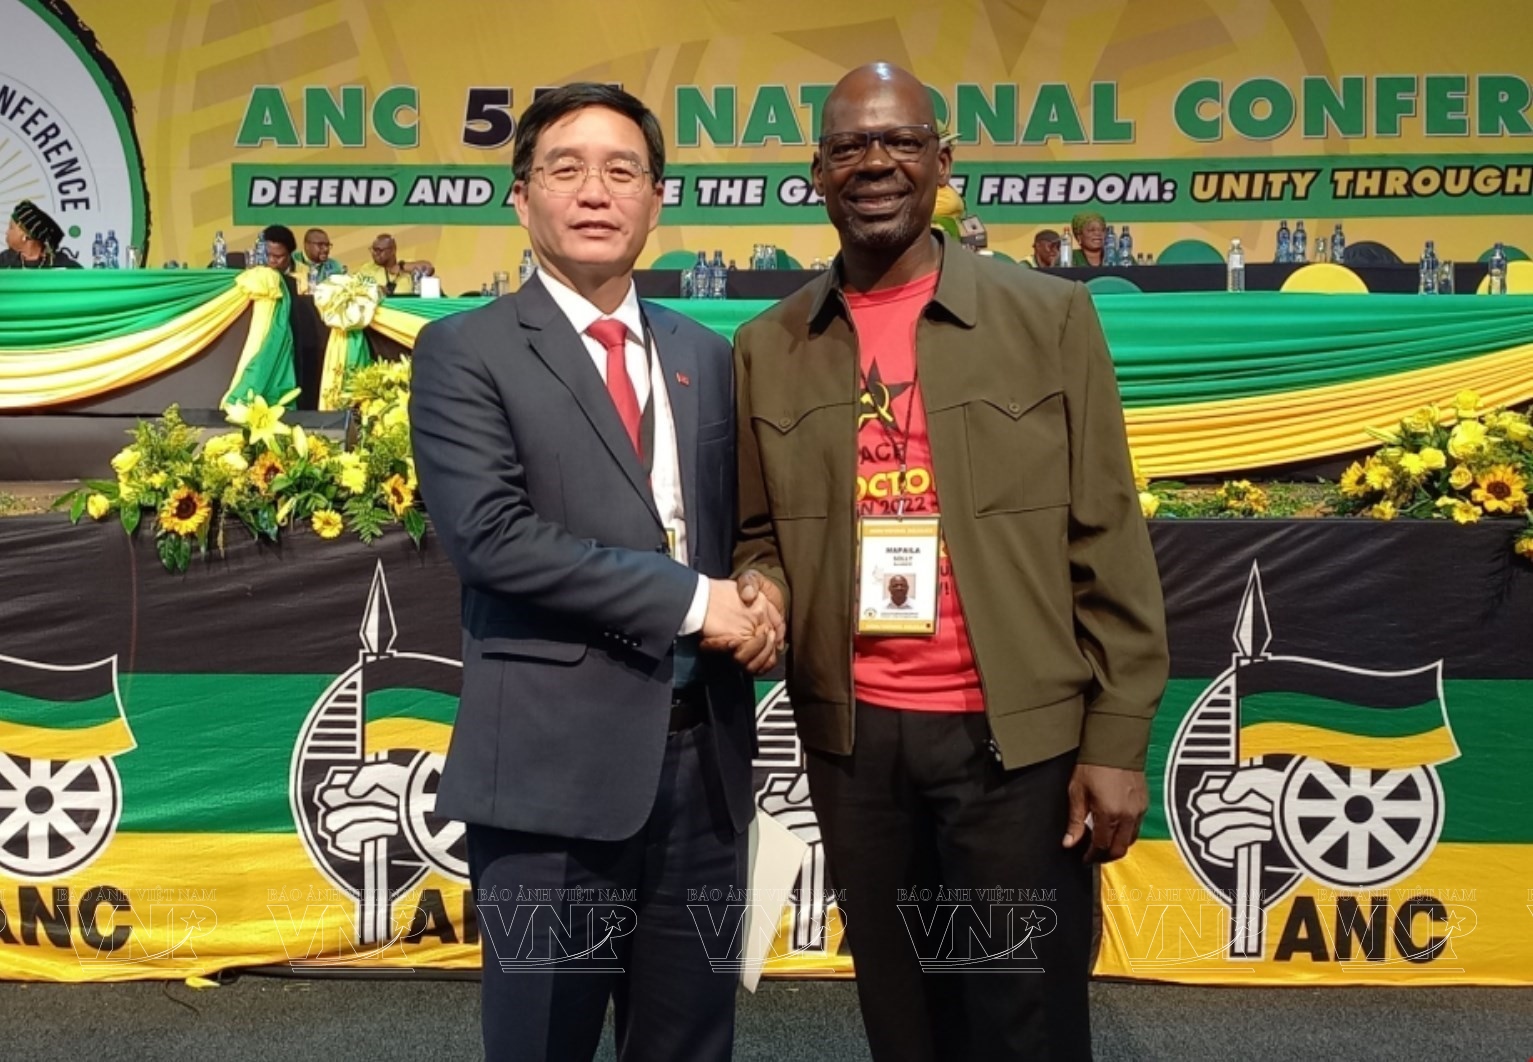 Đoàn đại biểu Đảng Cộng sản Việt Nam tham dự Đại hội lần thứ 55 của Đảng Đại hội Dân tộc Phi (ANC)